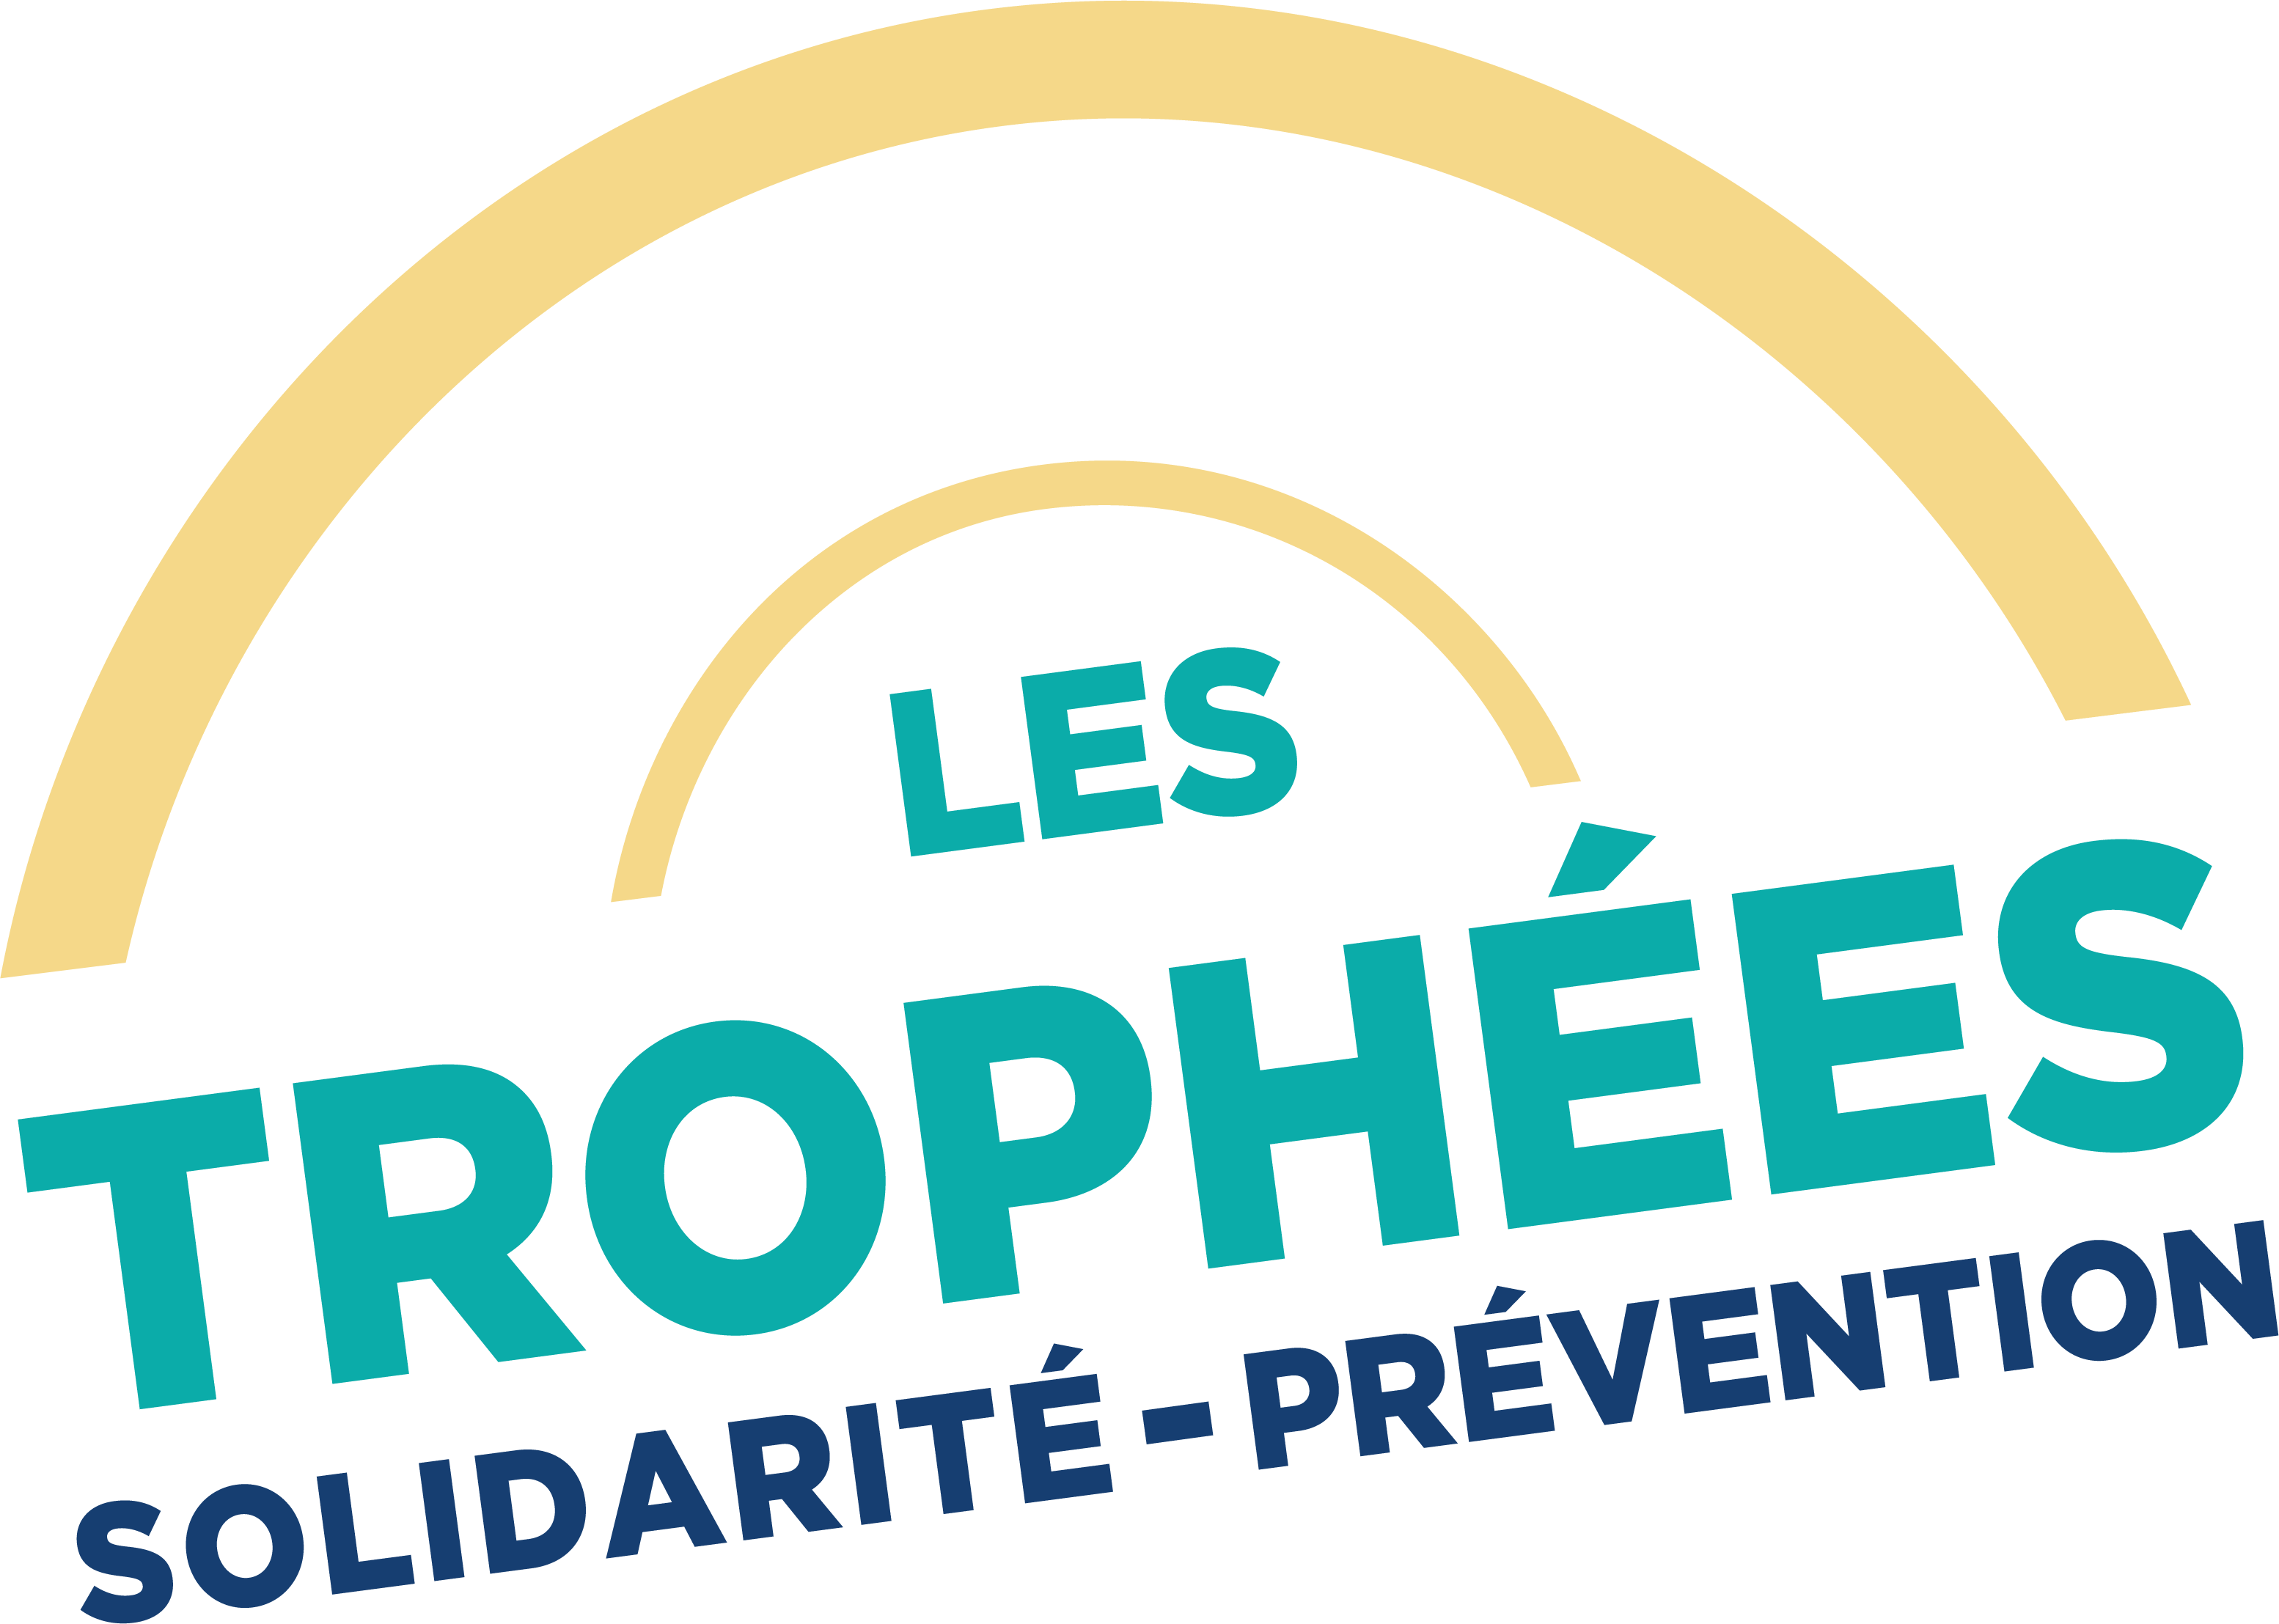 IRP AUTO - Trophées Solidarité-Prévention